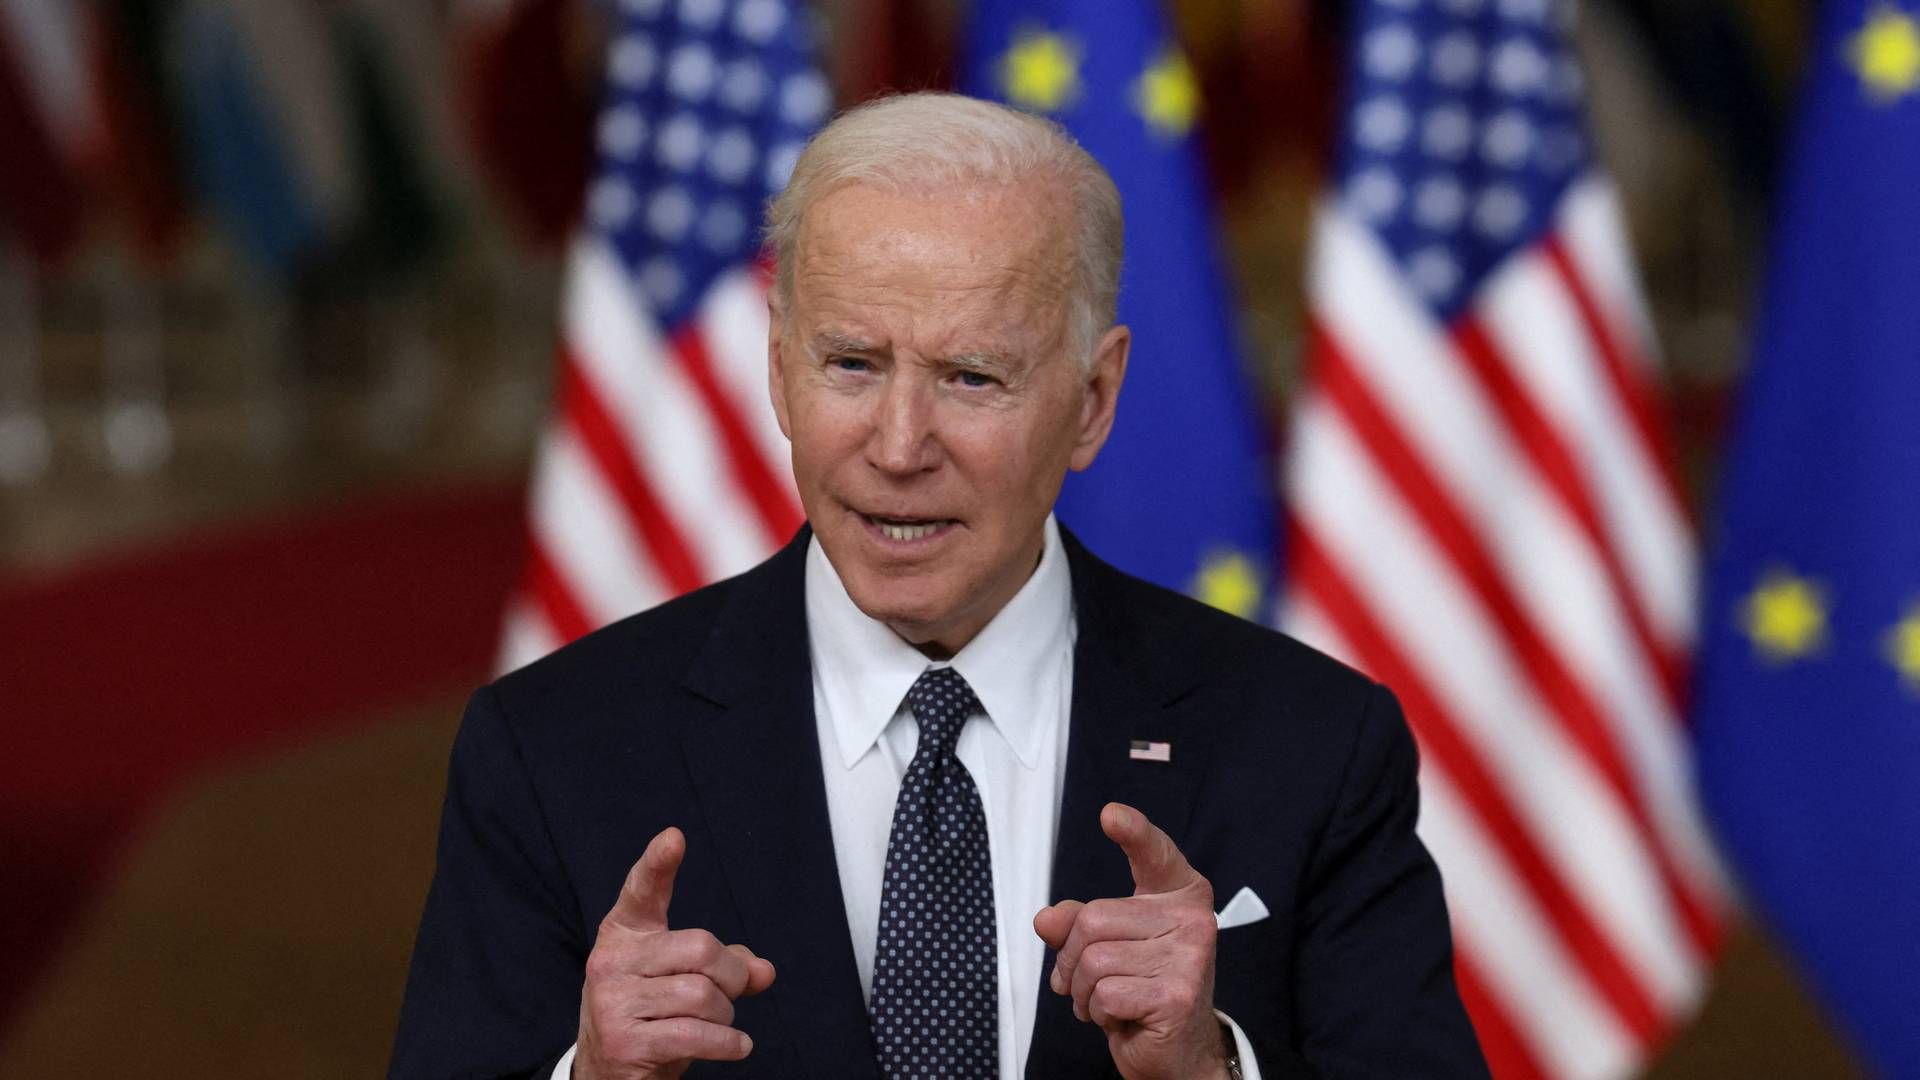 USA's præsident Joe Biden har i de seneste dage været i Bruxelles for at diskutere situationen mellem Rusland og Ukraine med europæiske ledere. | Foto: EVELYN HOCKSTEIN/REUTERS / X07527